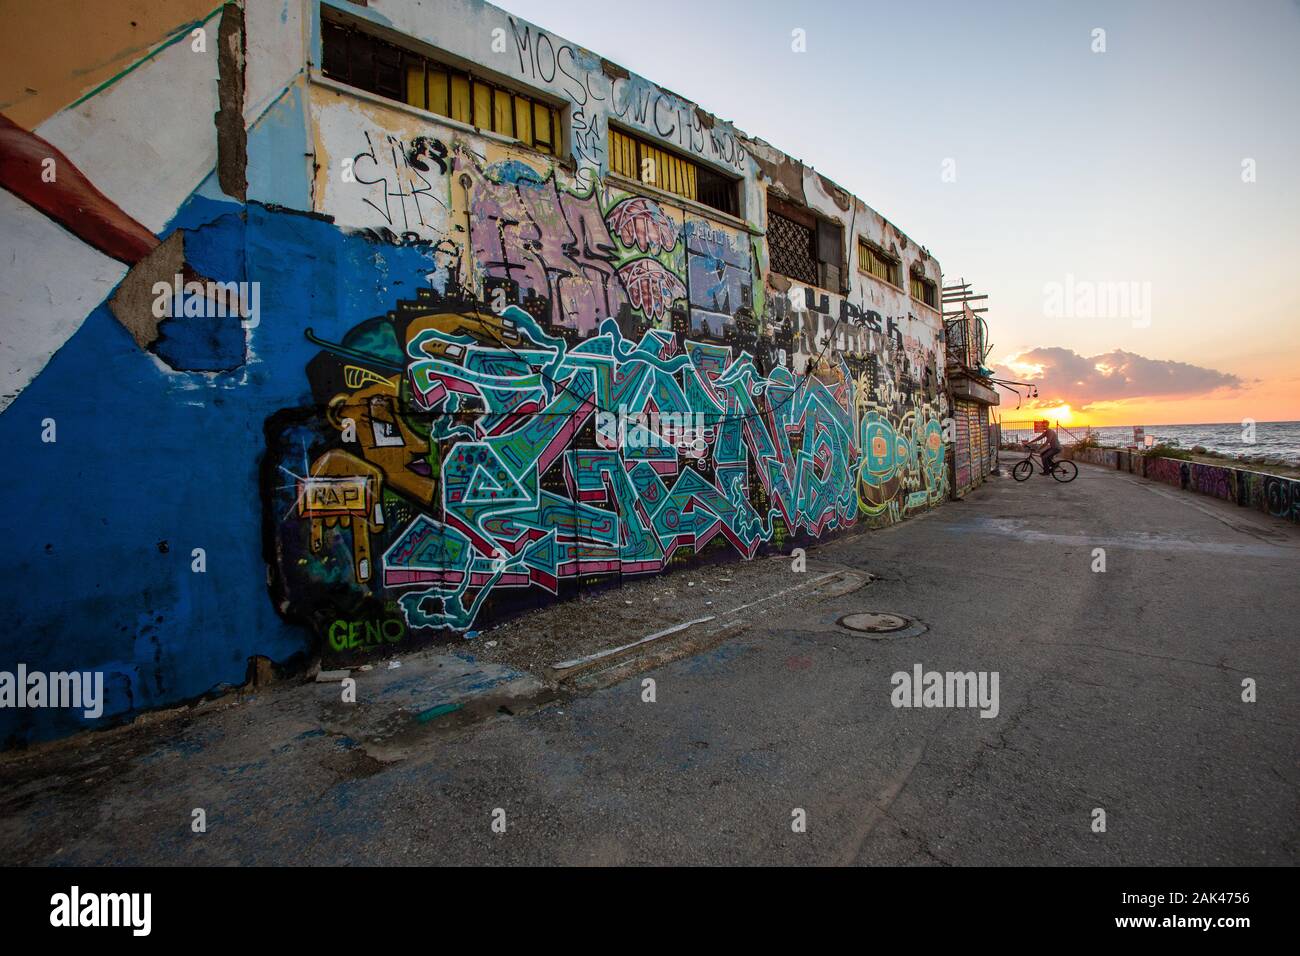 Le graffiti sur le mur de la Déserte et Delphinarium négligées des capacités dans Tel Aviv, Israël. Cet édifice a été démoli en 2019 Banque D'Images